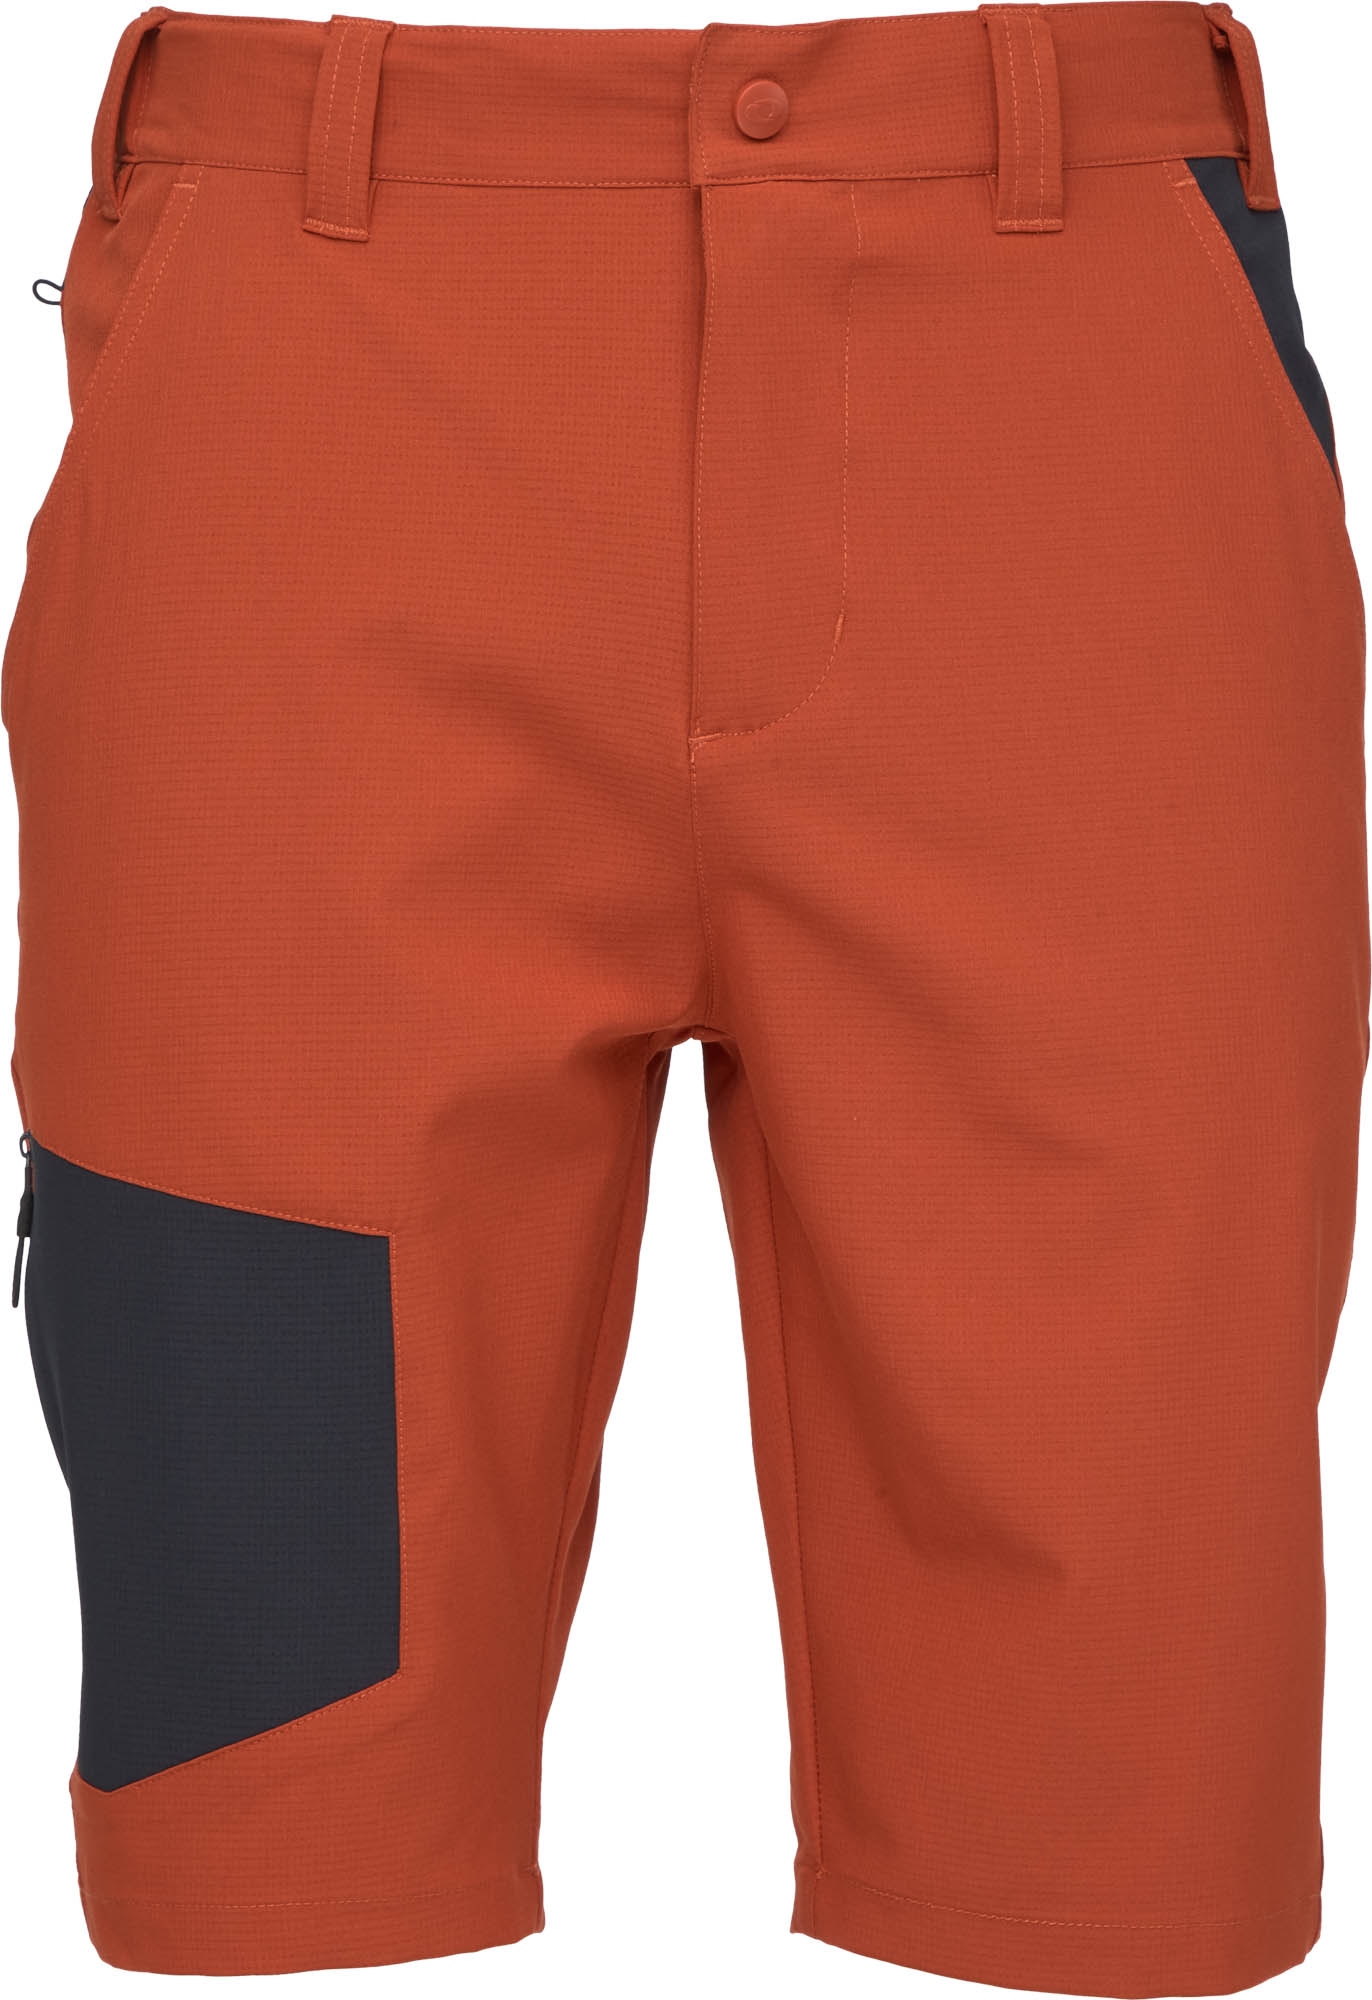 Men's Shorts LOAP UZEK Orange/Dark Blue